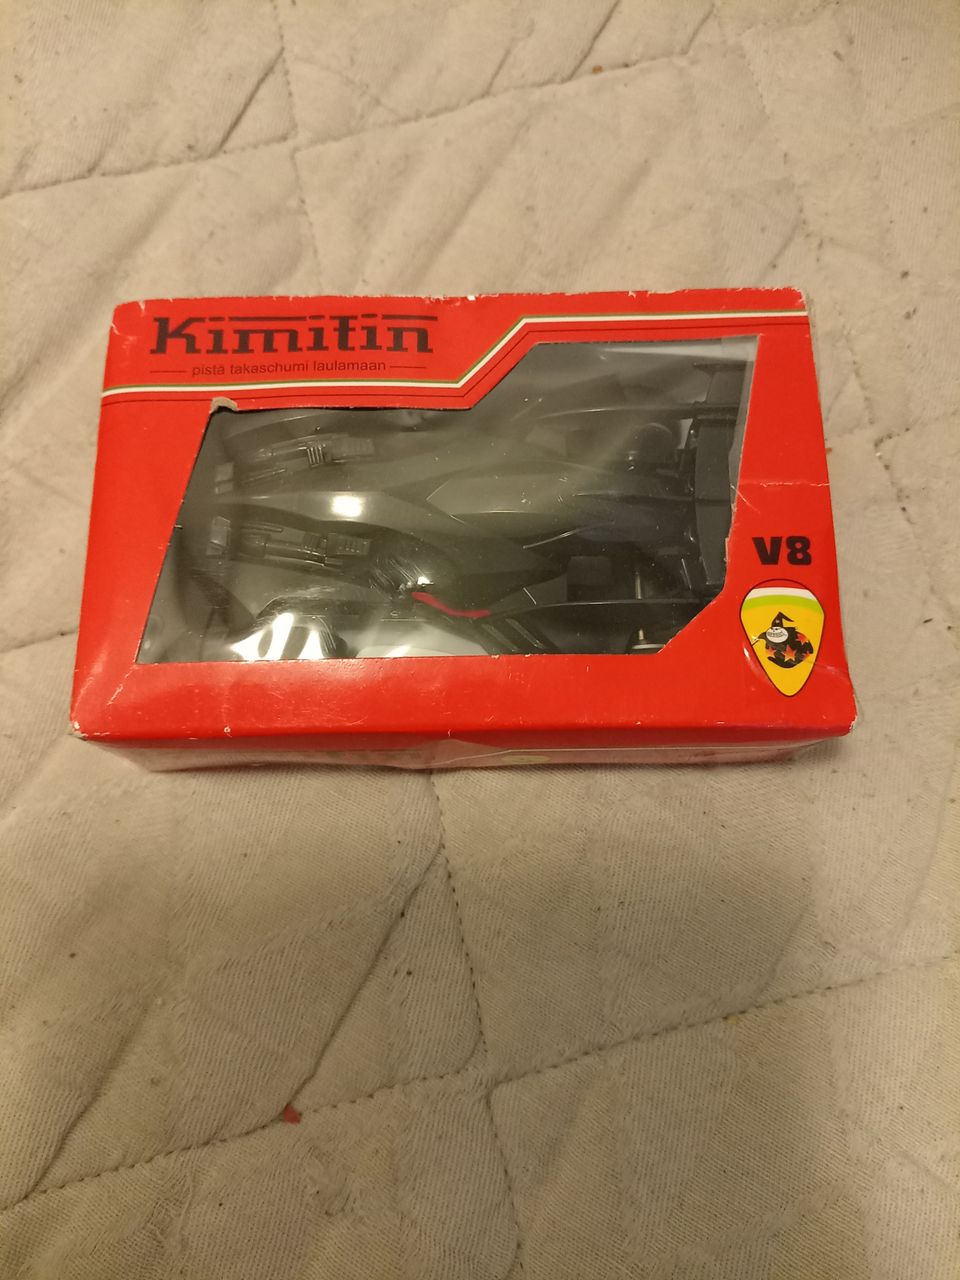 Ferrari auto